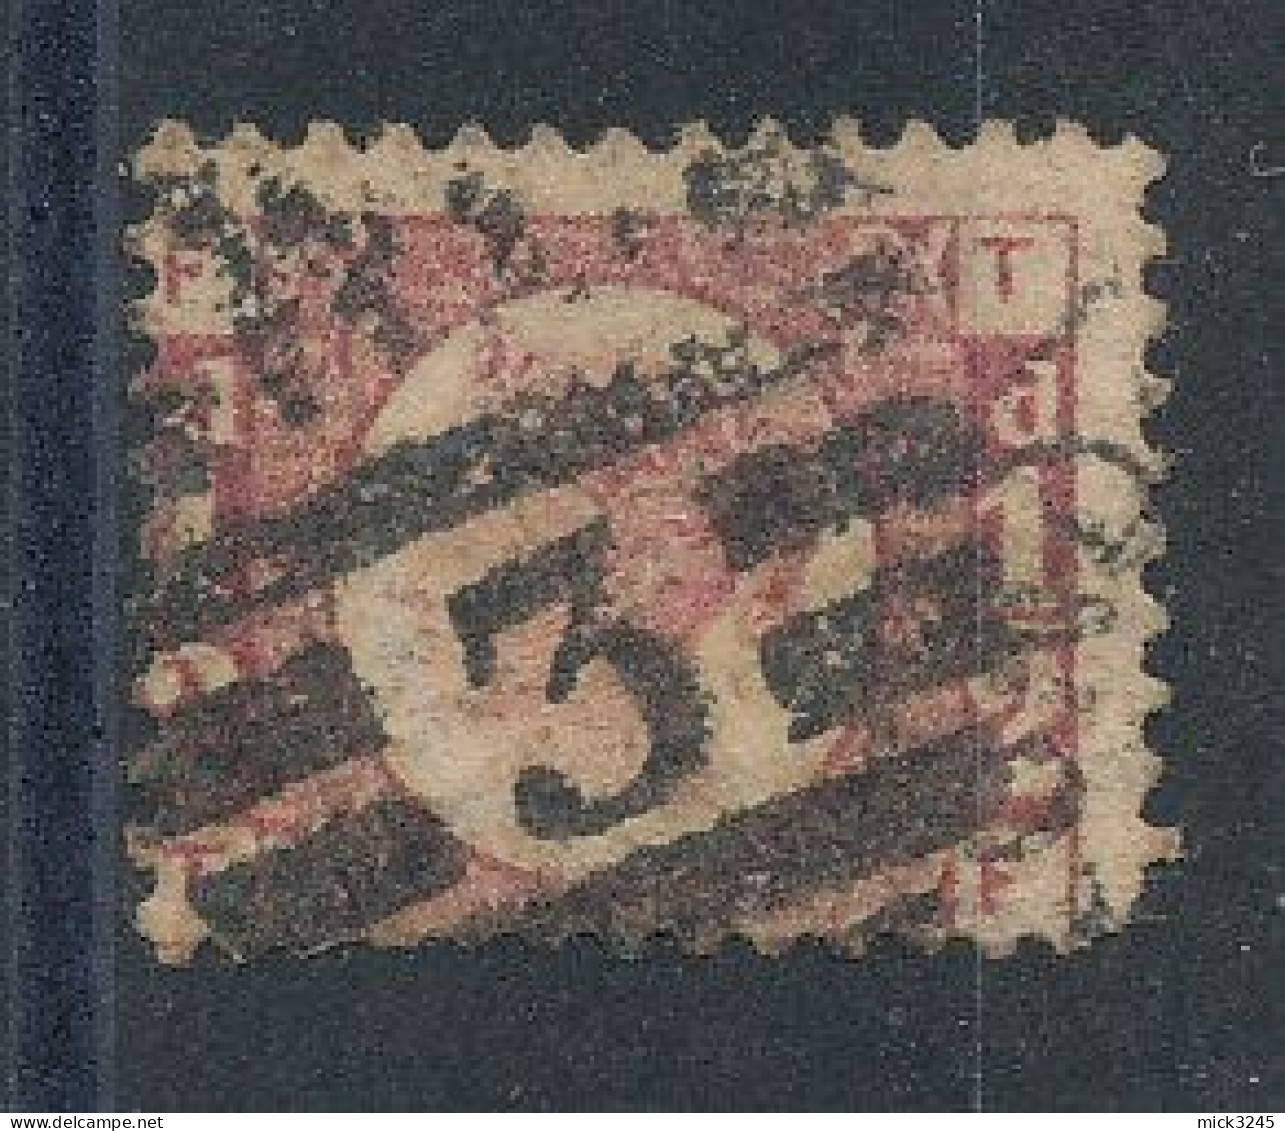 GB  N°49 Victoria 1/2p Rouge De 1870 - Oblitérés